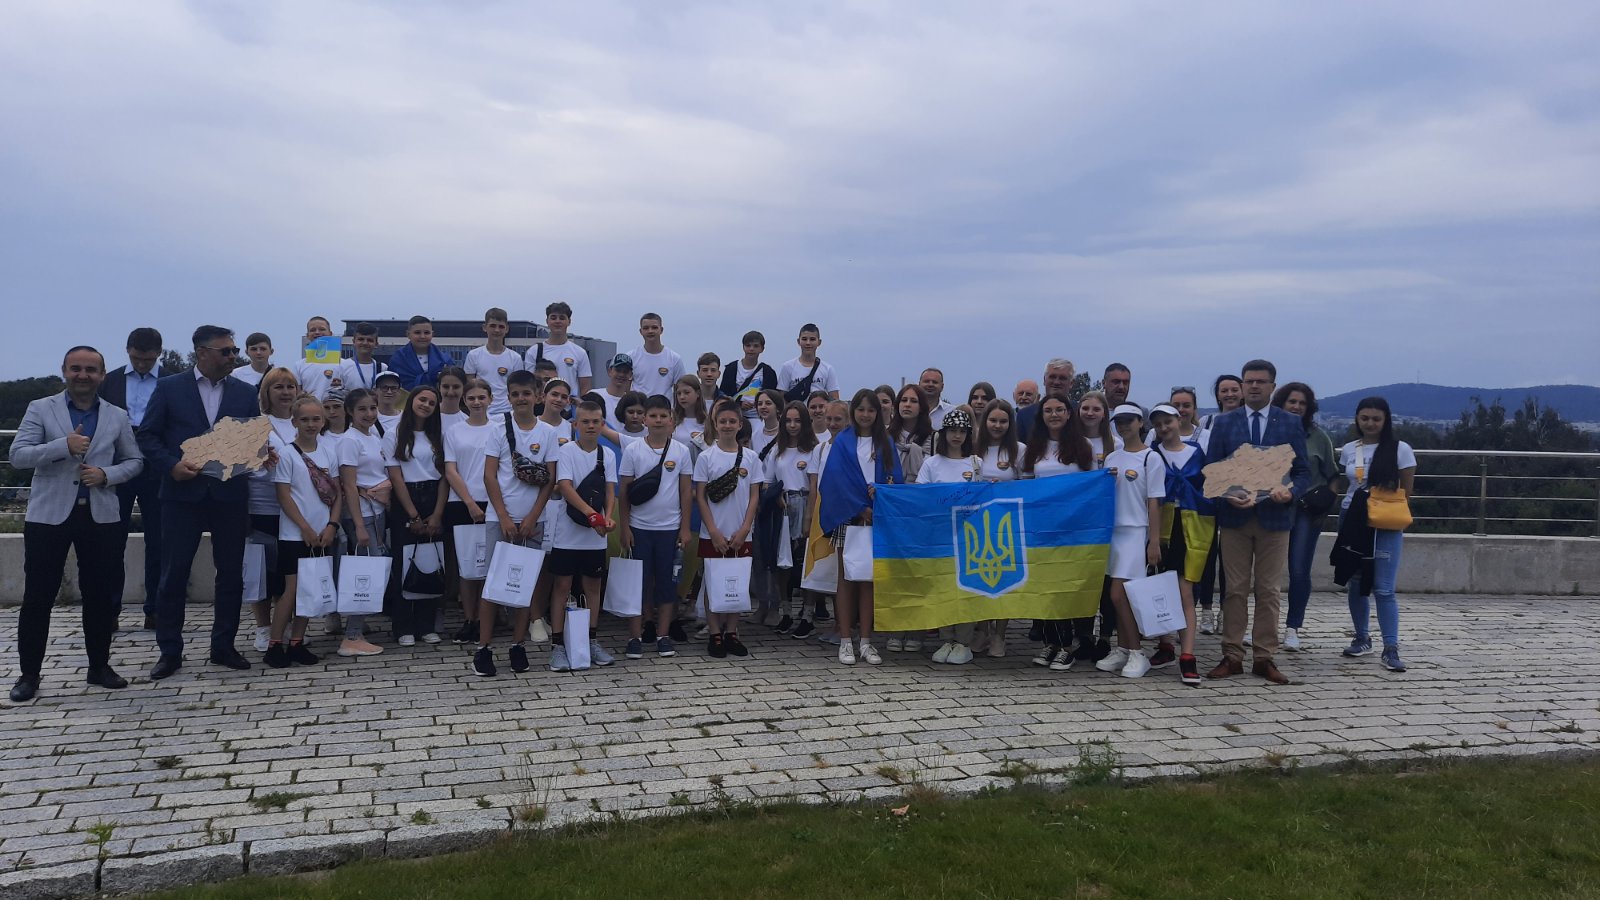 Діти із першої групи на літніх канікулах побували закордоном та мали змогу ознайомитись із польською культурою та традиціями